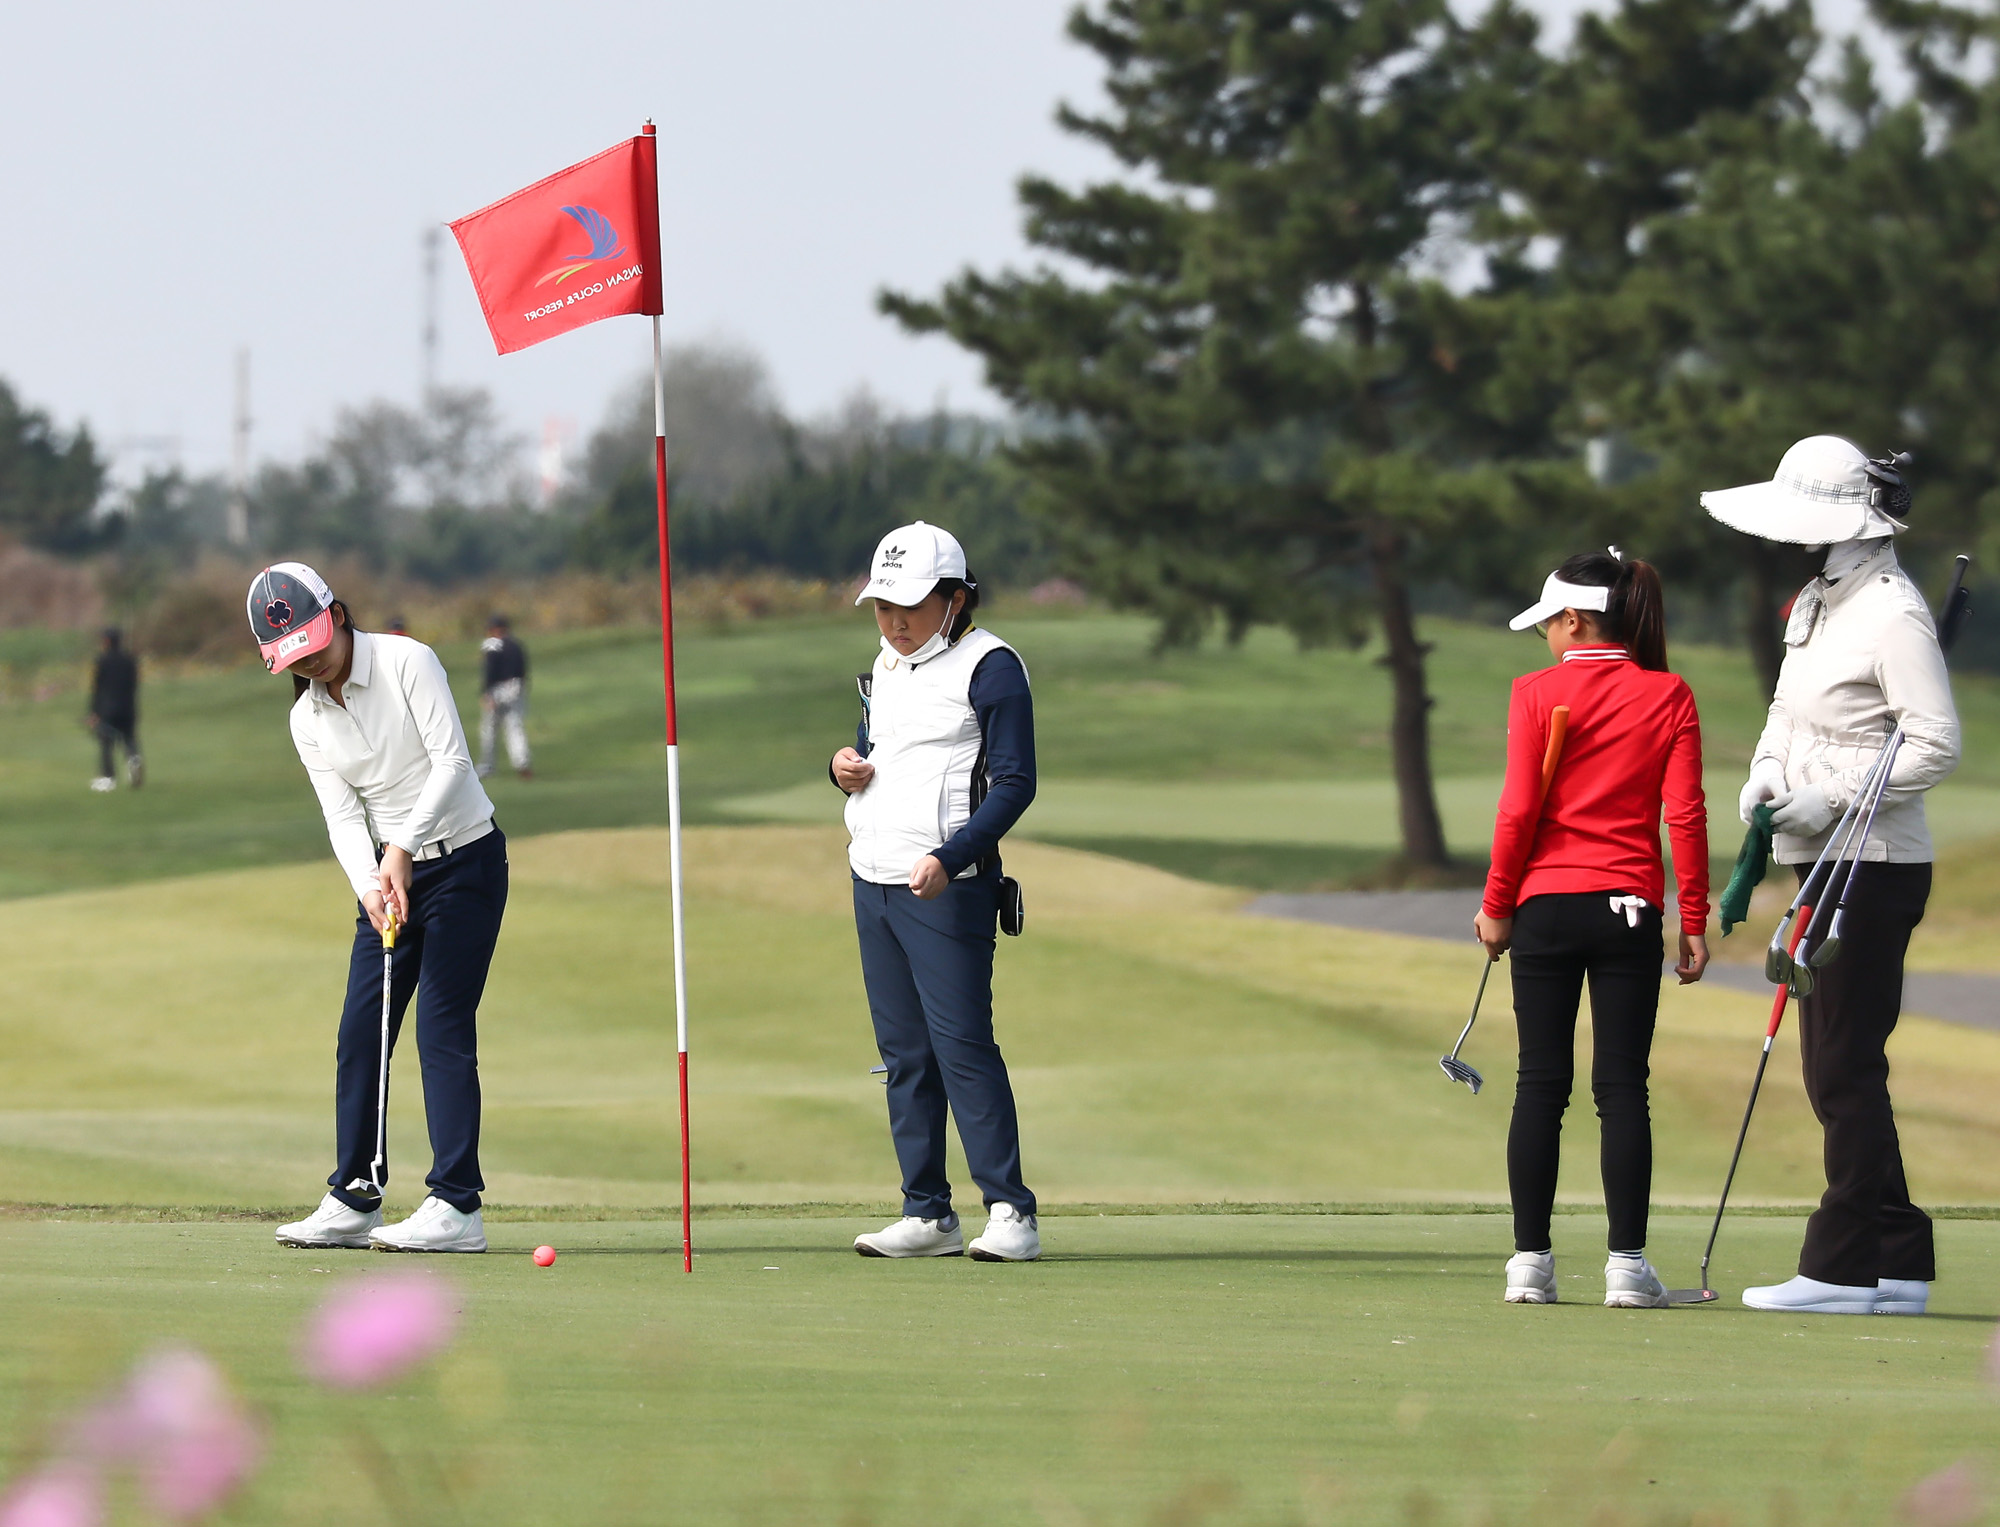 사회 체육 골프 일요신문 한국초등학교 골프연